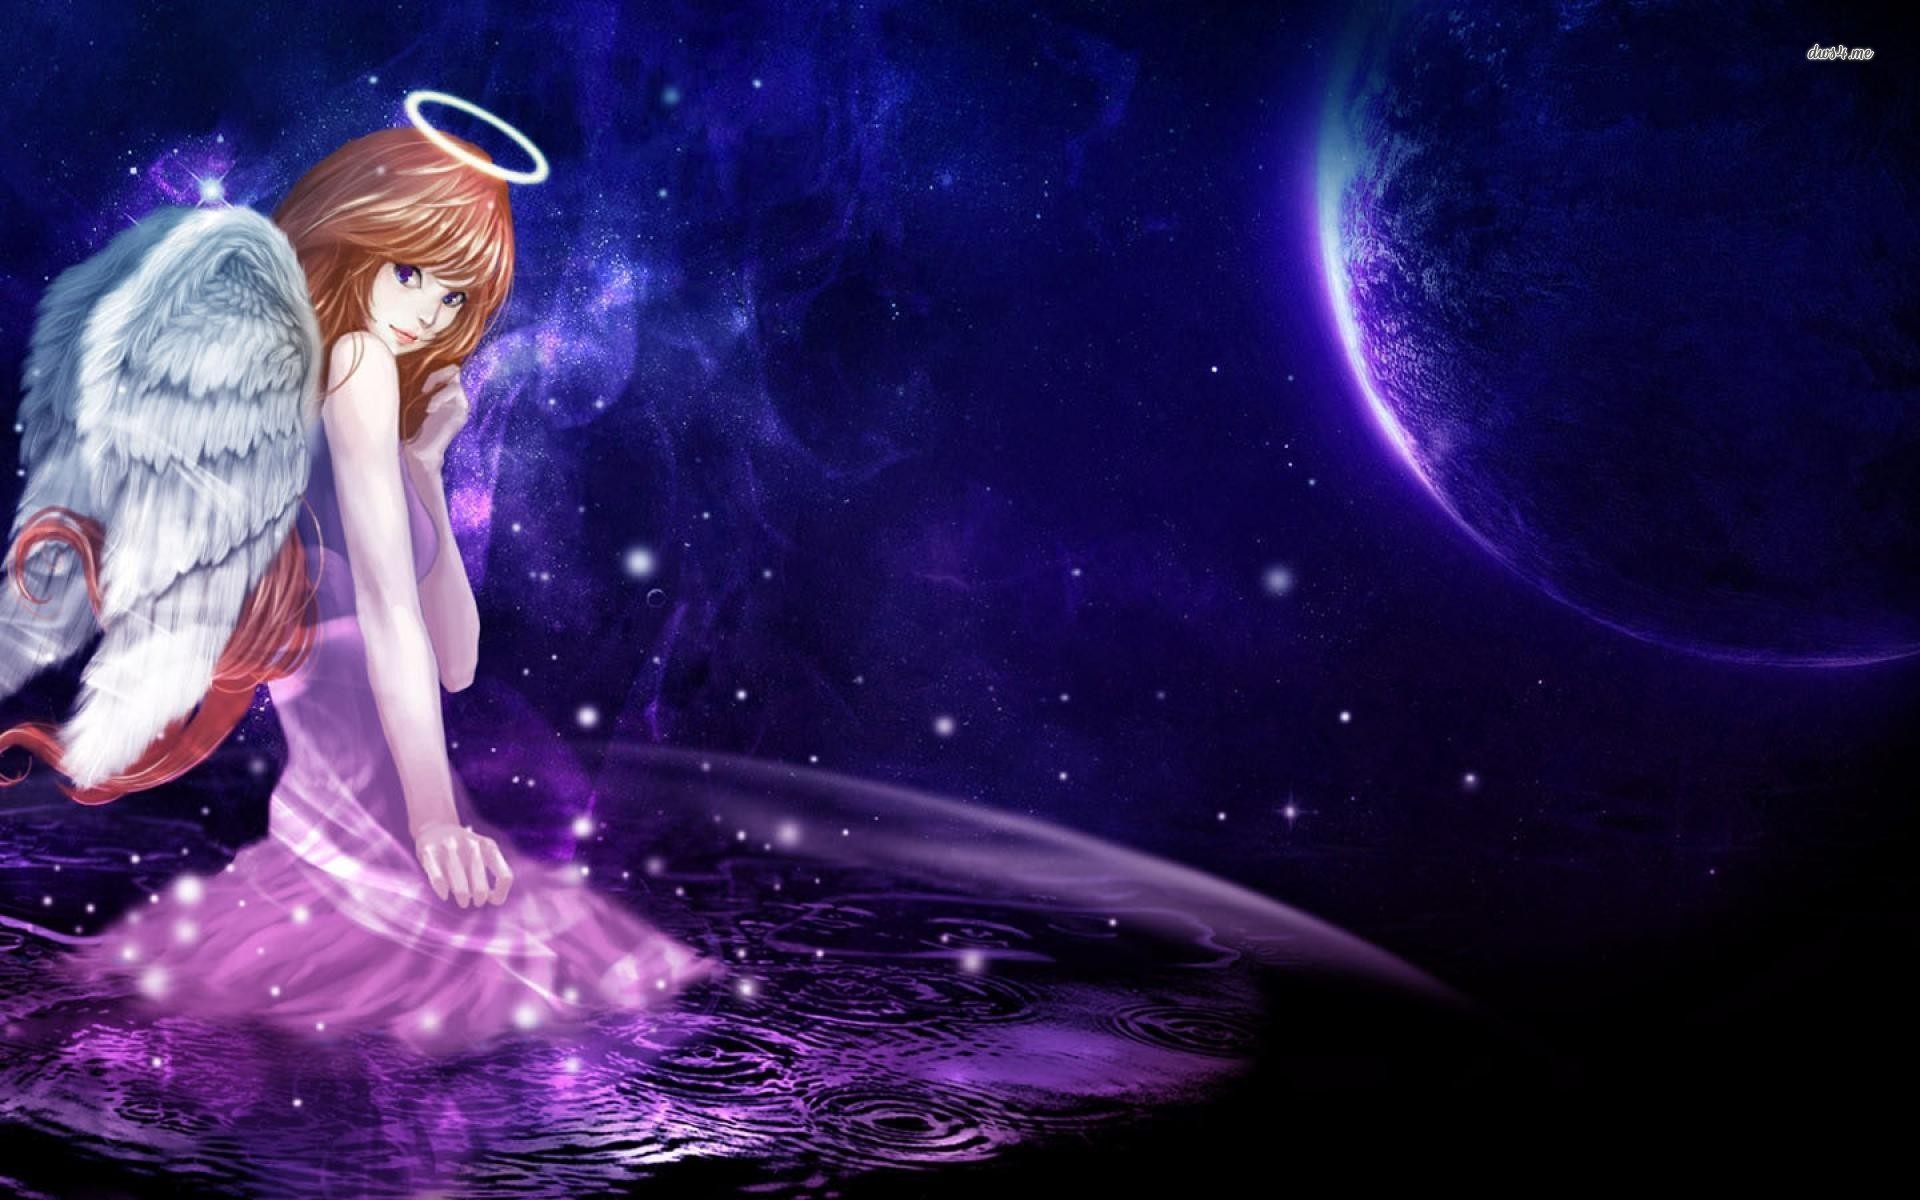 Cute Stars Desktop Wallpaper Fantasy Planet Water Star Woman Angel